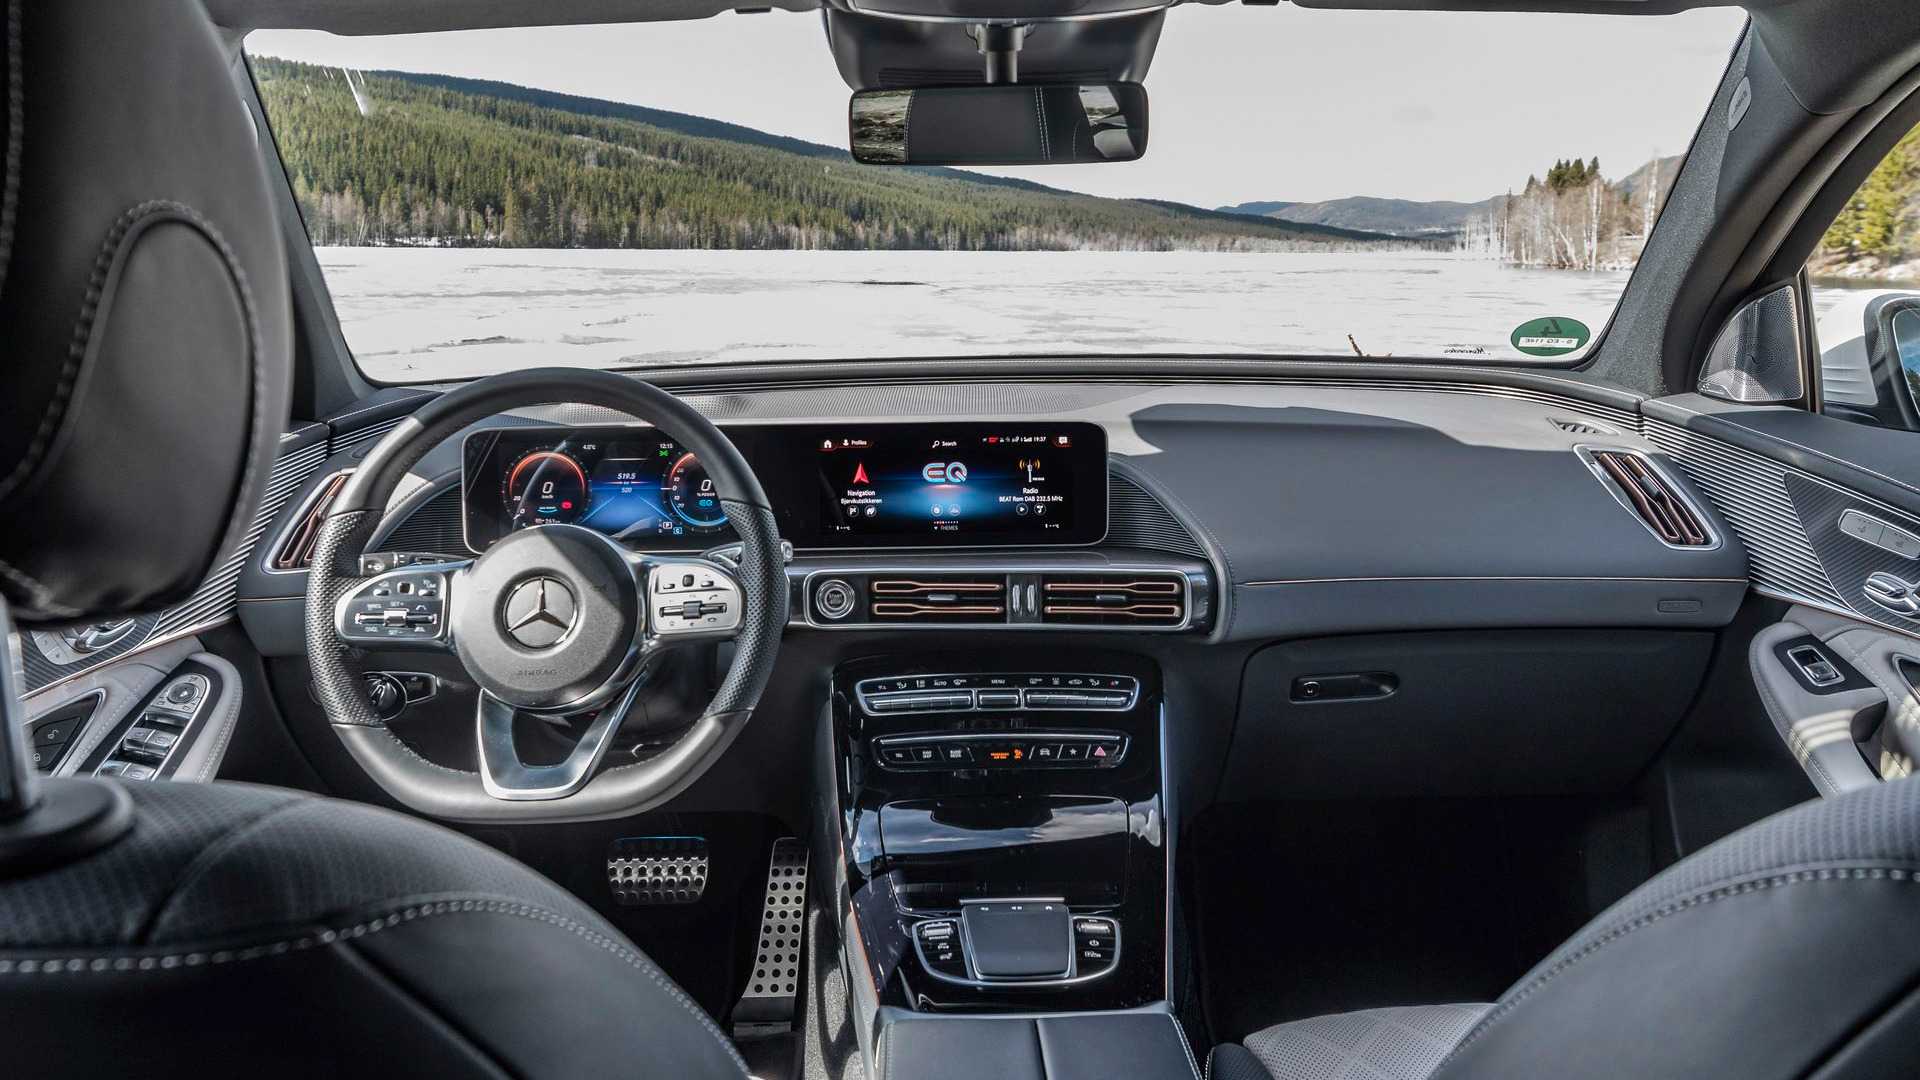 Mercedes Benz Eqc Interior